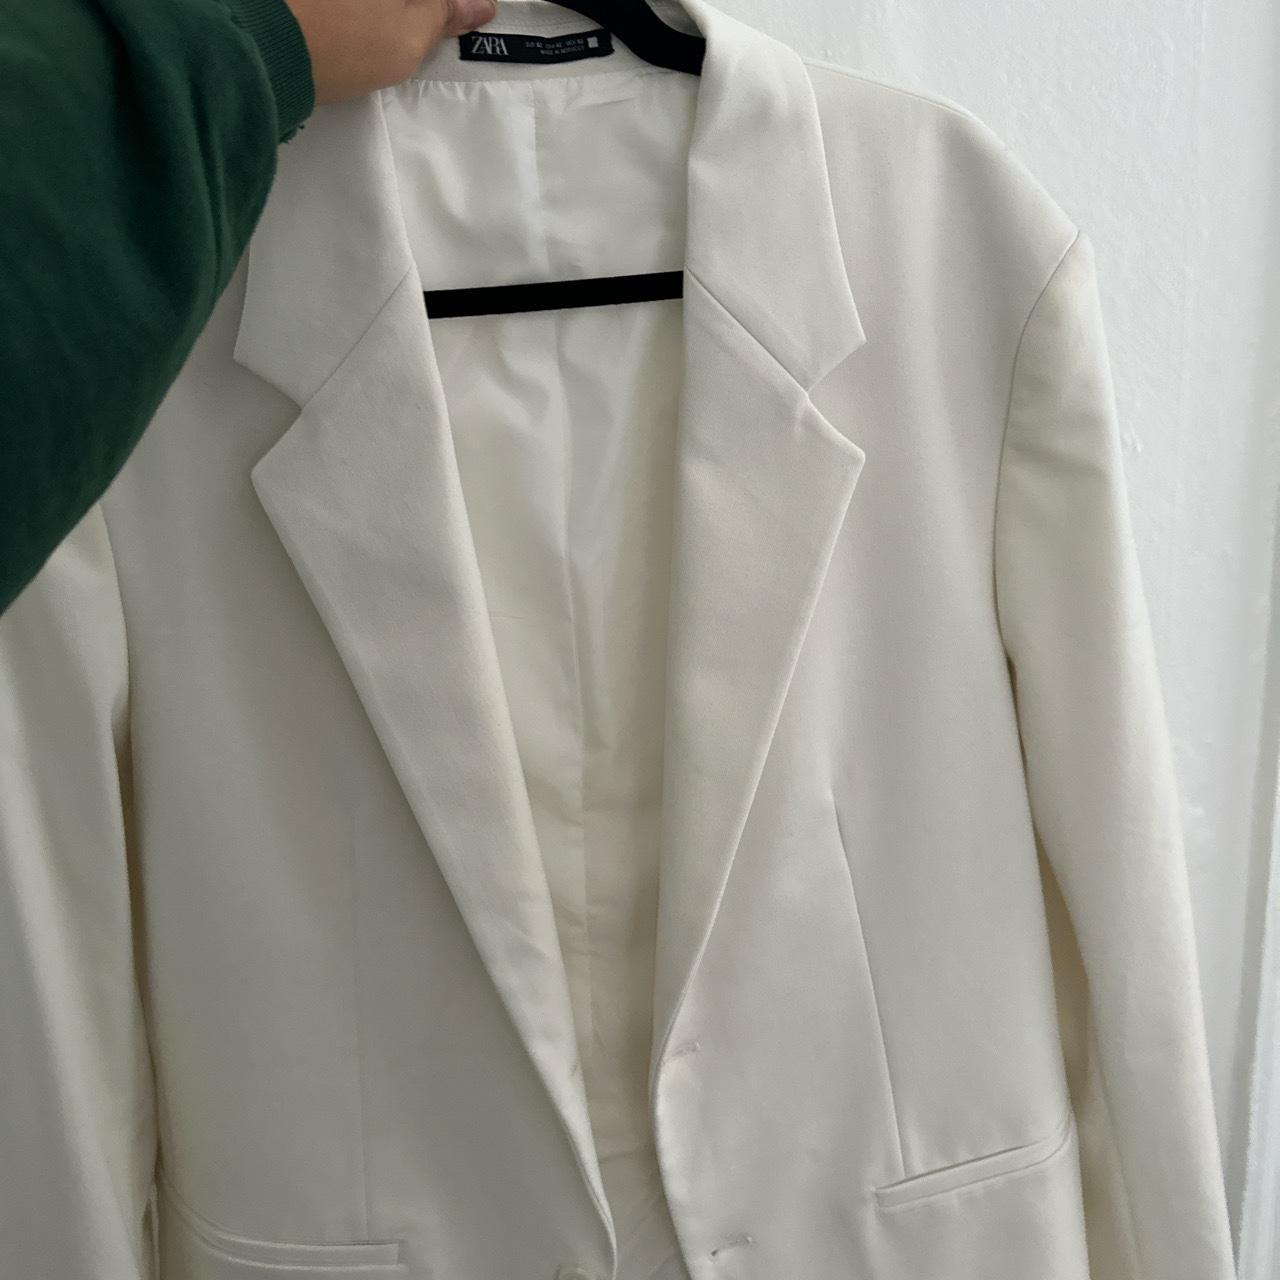 Zara Women's White and Cream Jacket (4)